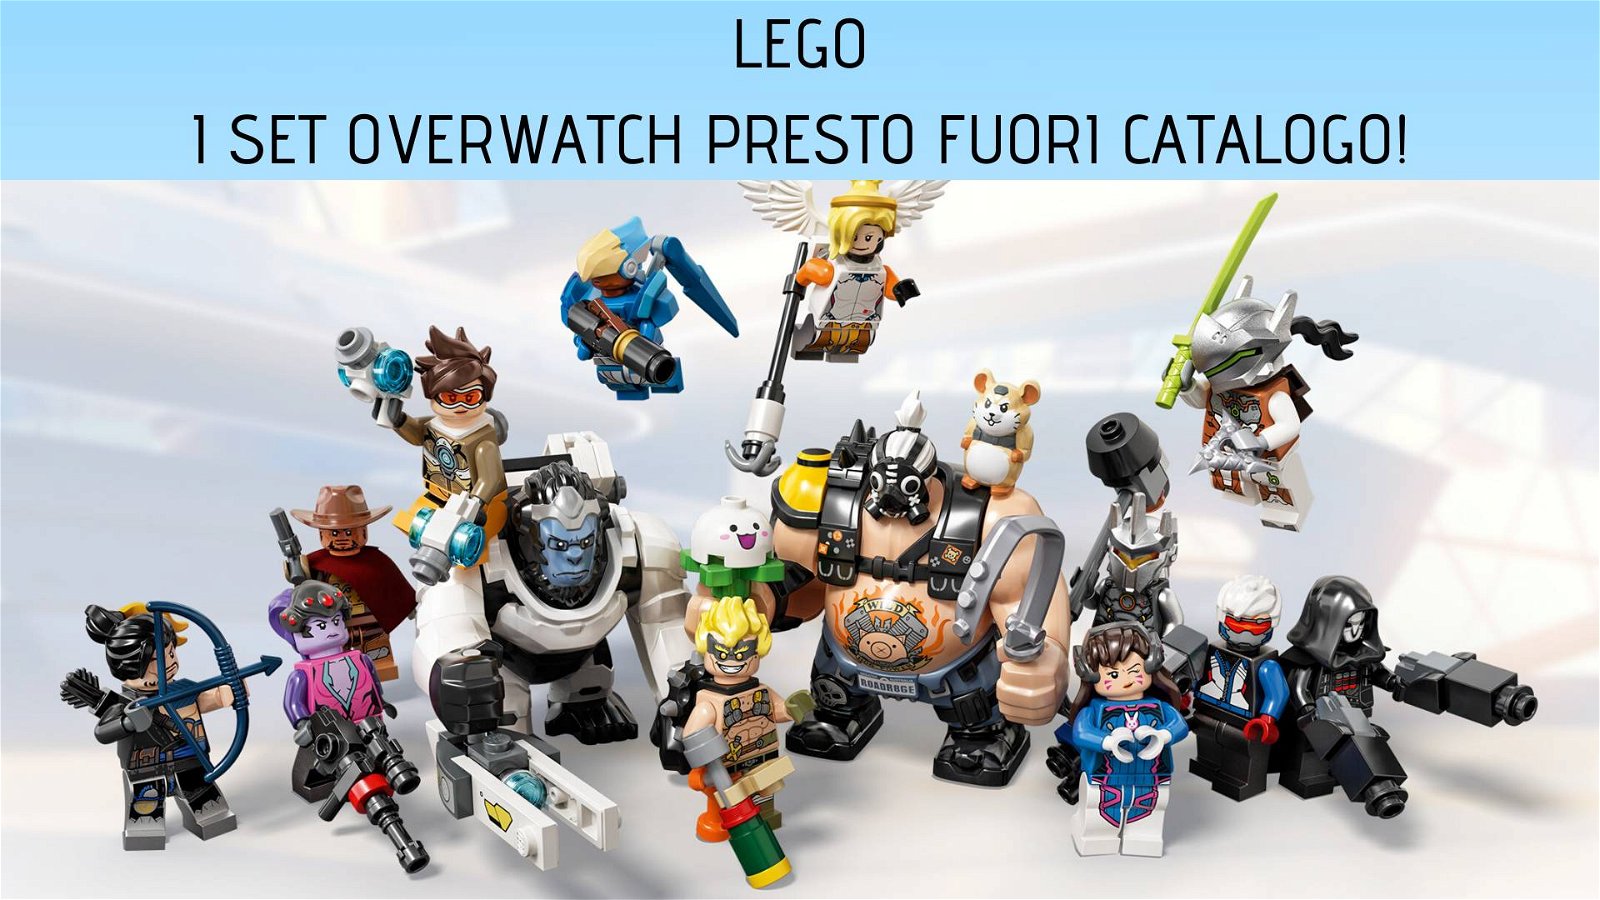 Immagine di Recupera subito i set Lego Overwatch, saranno presto fuori catalogo!